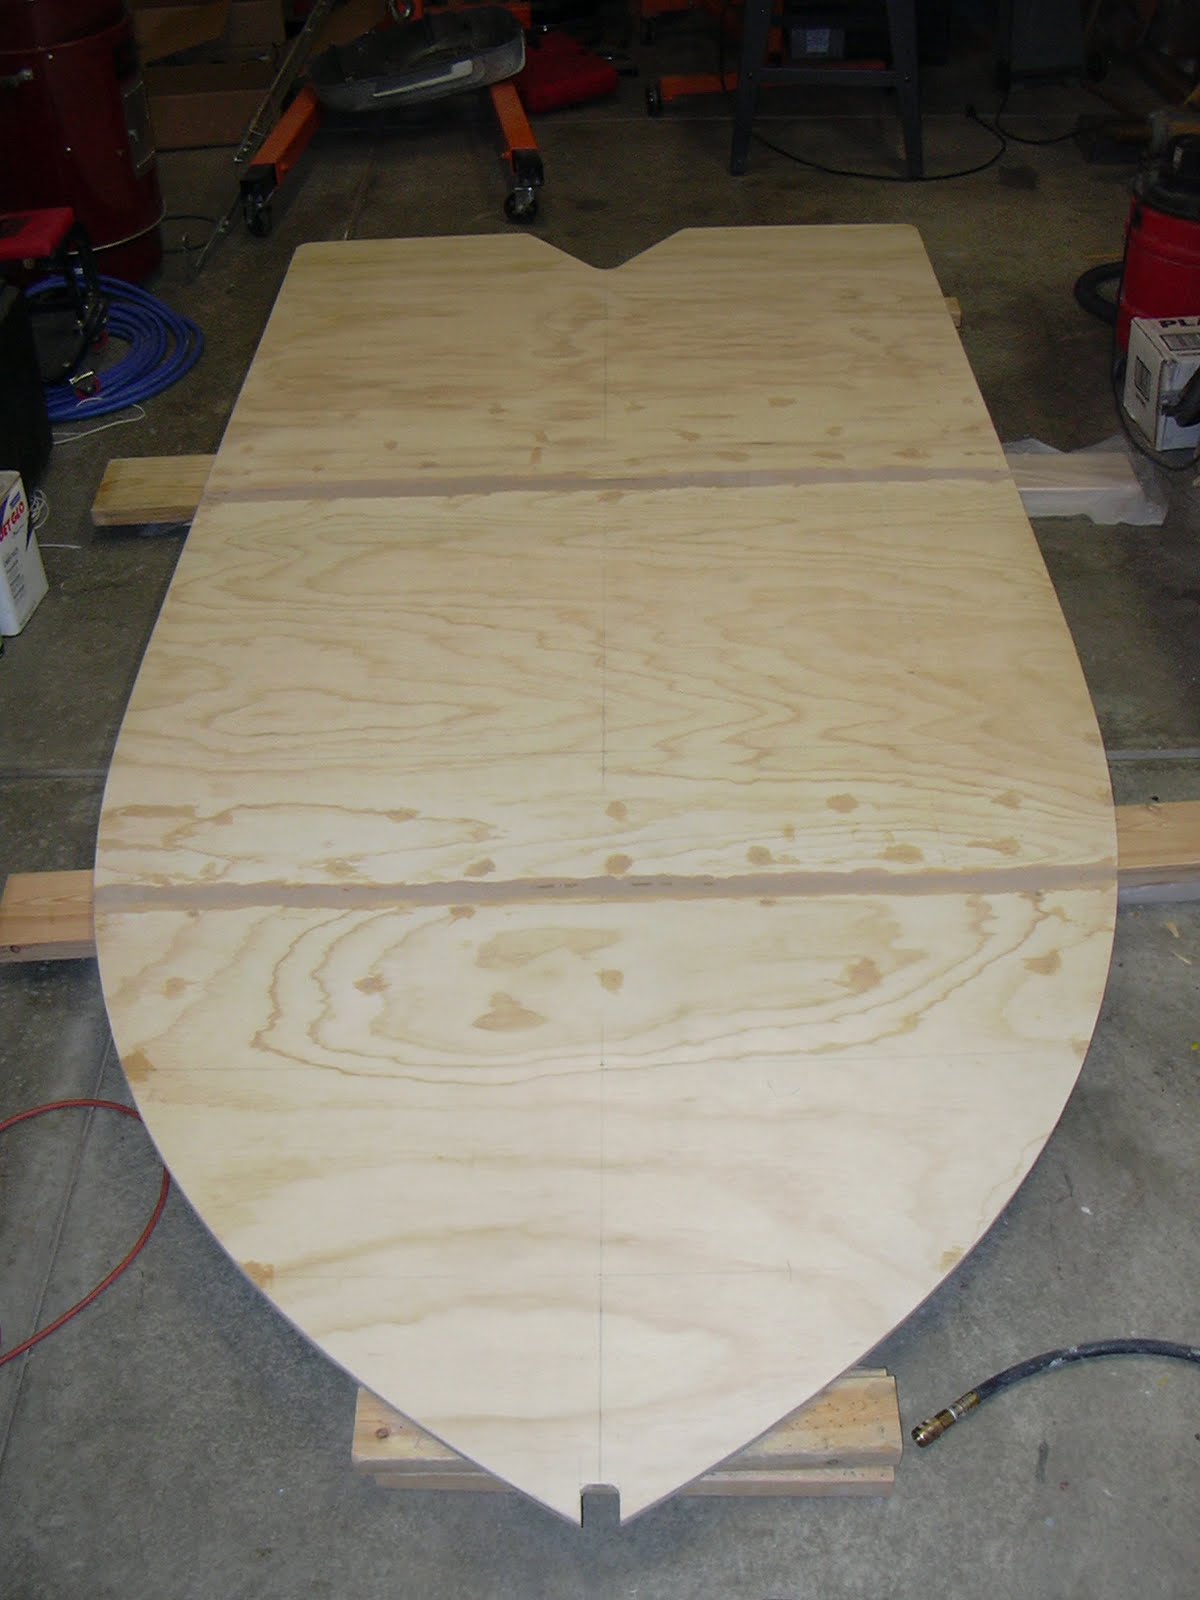 diy plan for a model wooden canoe